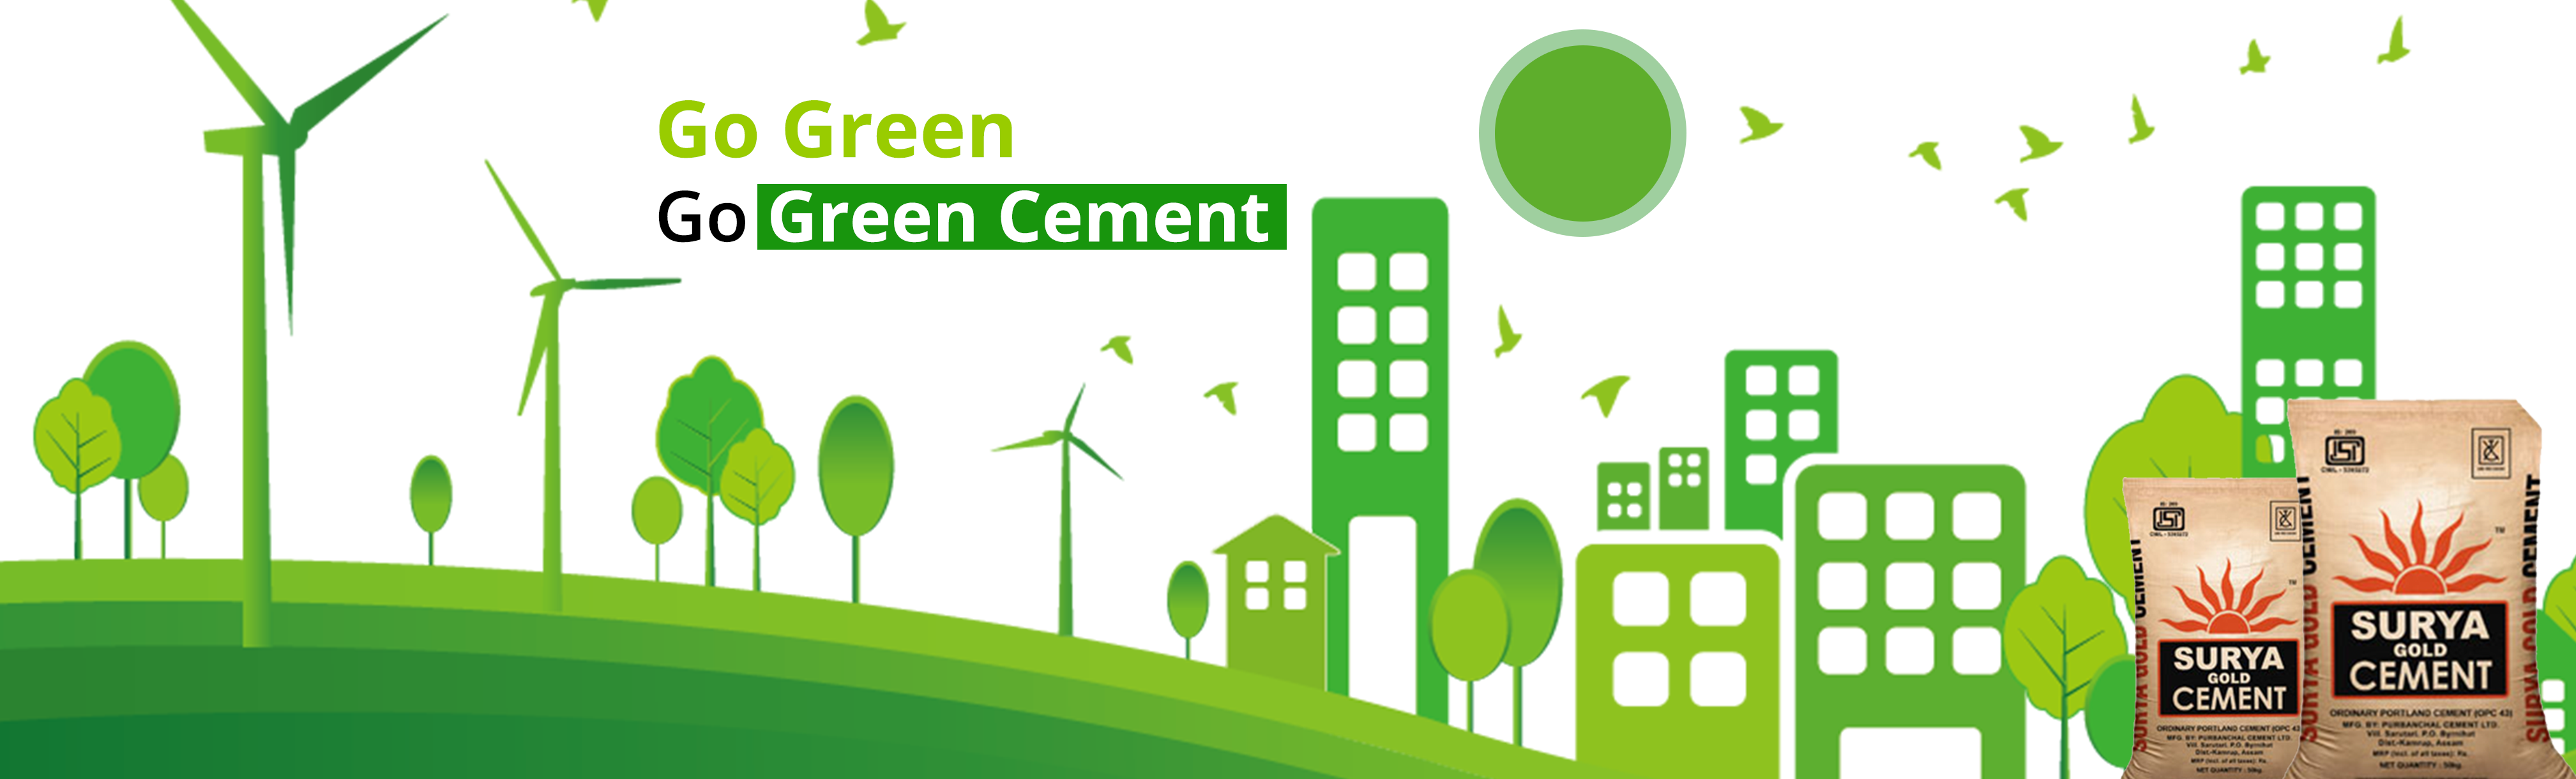 green-cement-banner